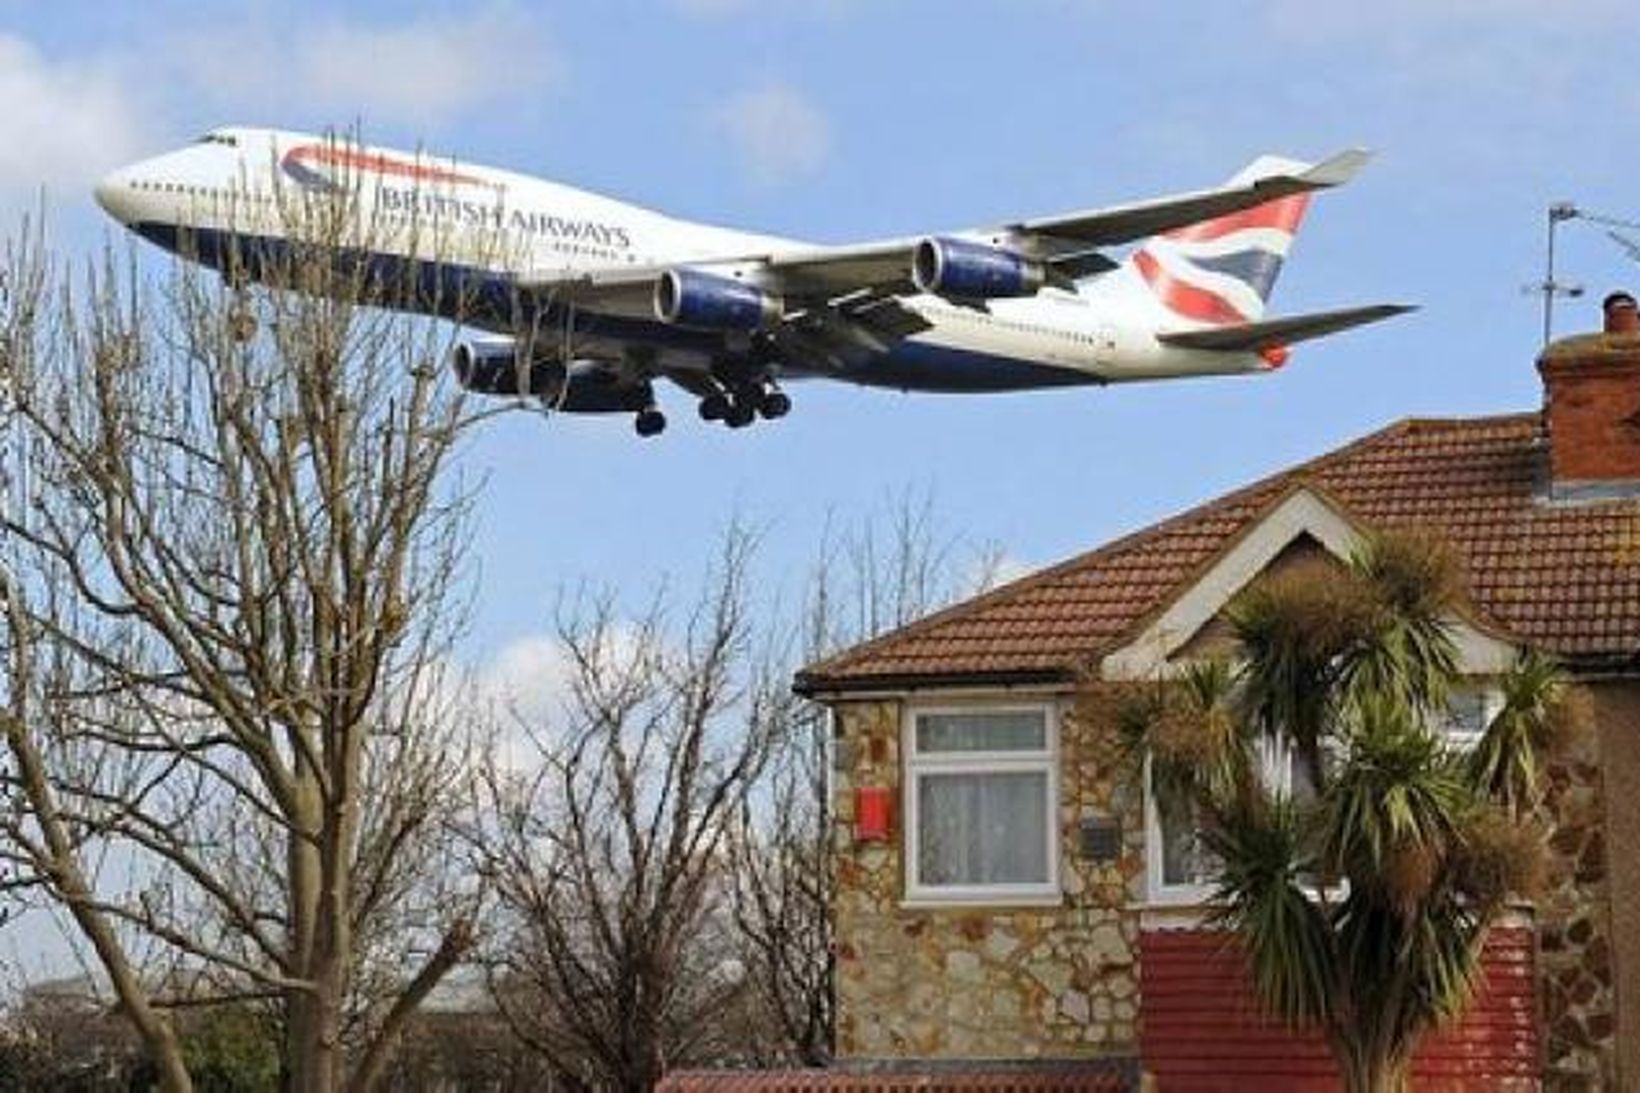 Flugvél British Airways kemur til lendingar á Heathrow flugvelli.